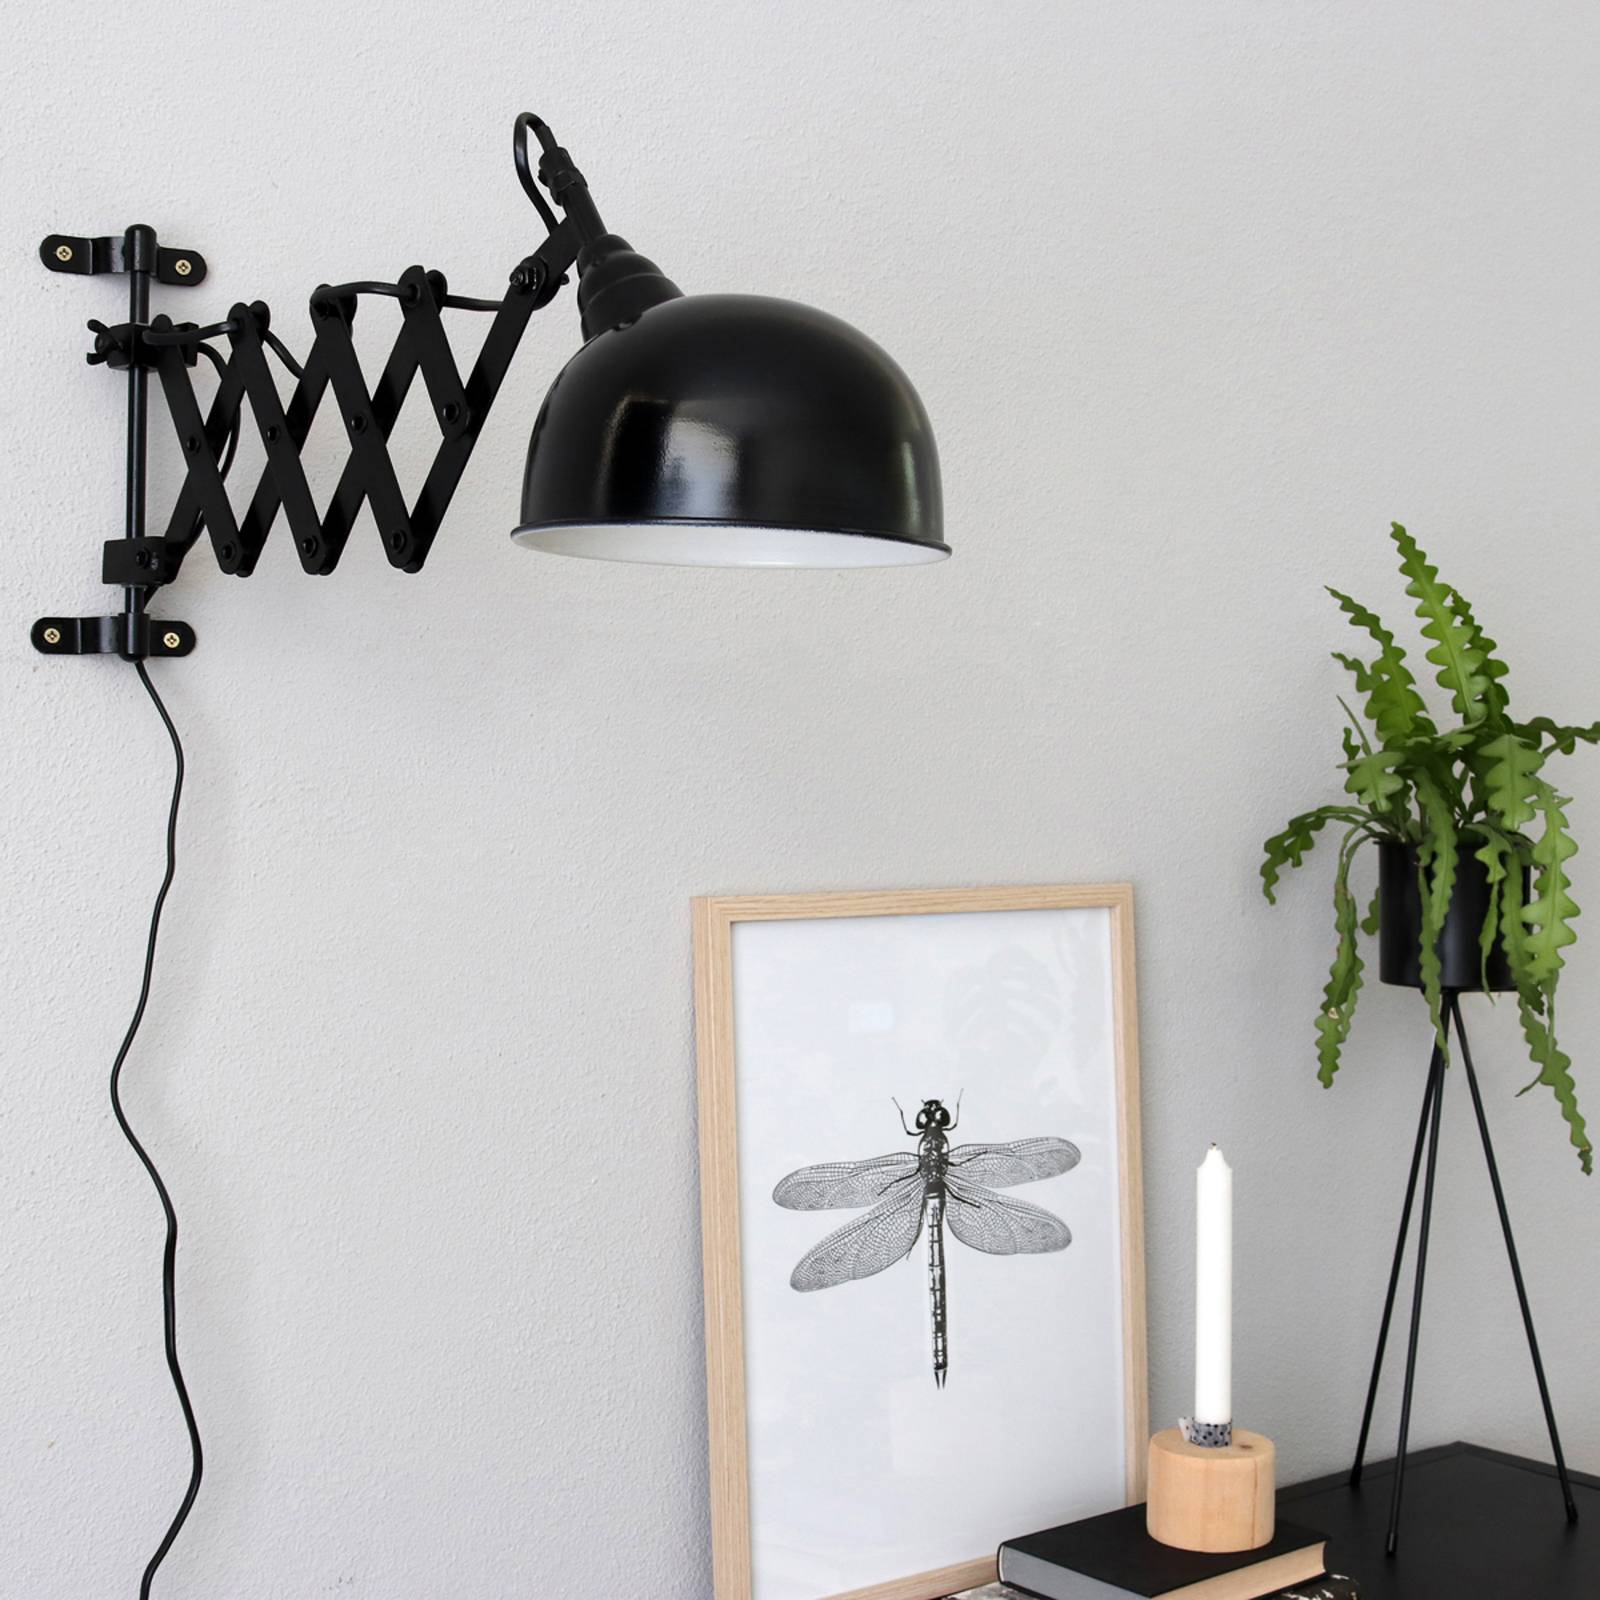 Steinhauer yorkshire ollós lámpa a falra, fekete színben